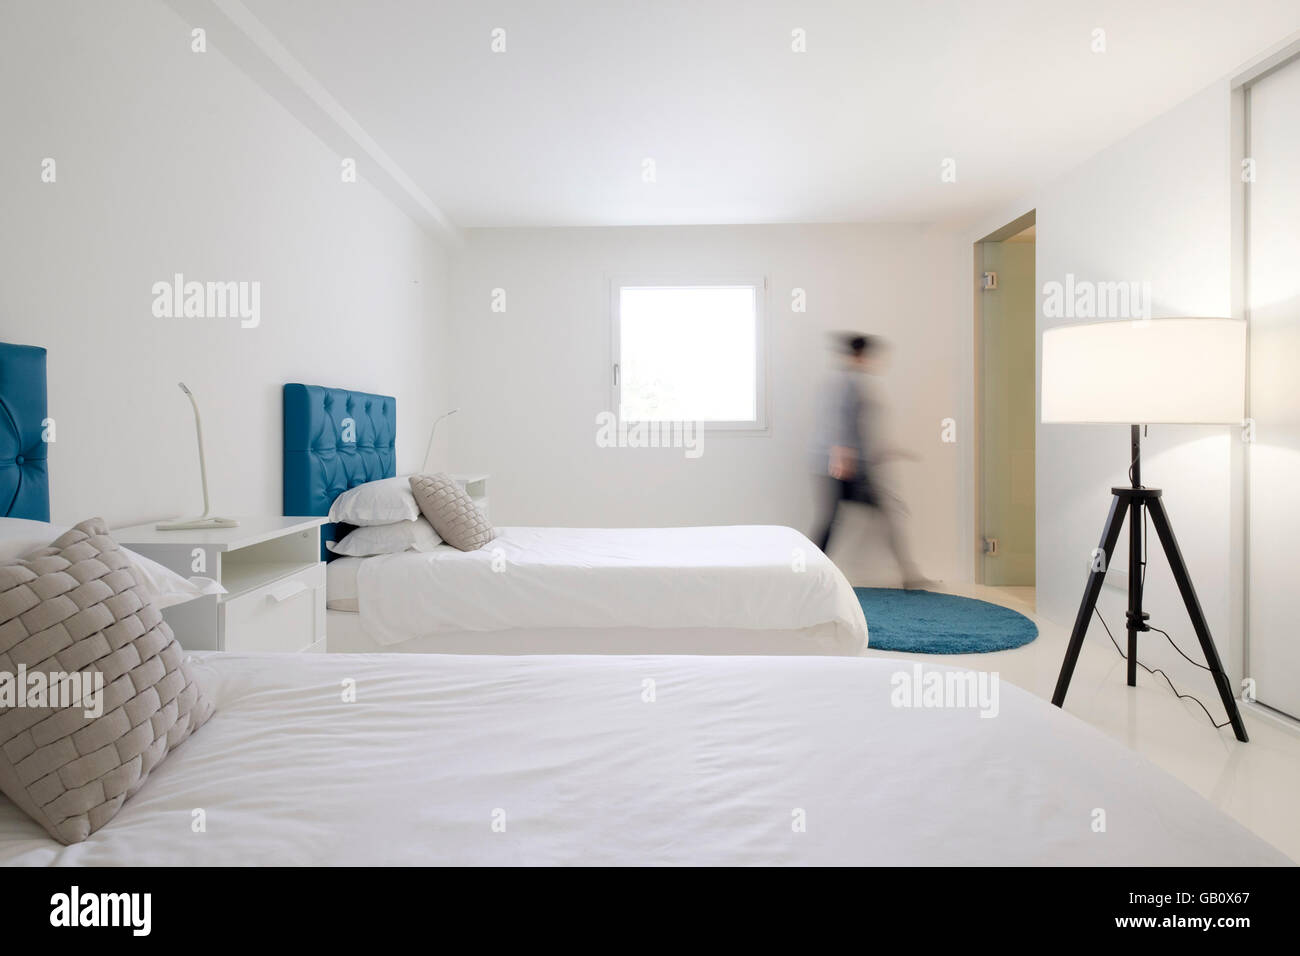 Mouvement personne floue marchant dans la chambre d'hôtel avec lits jumeaux Banque D'Images